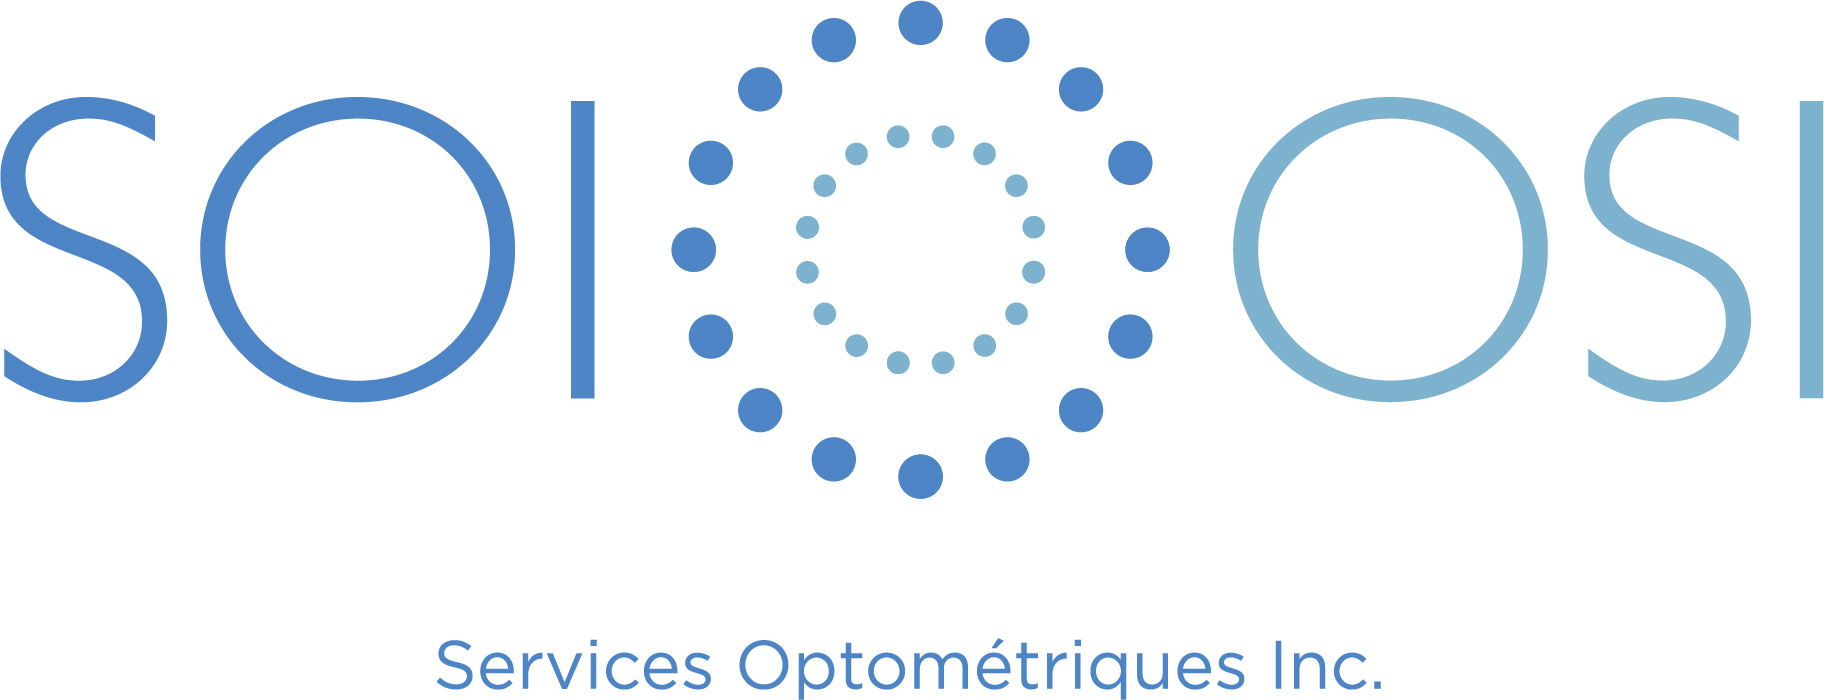 Services Optométriques Inc.